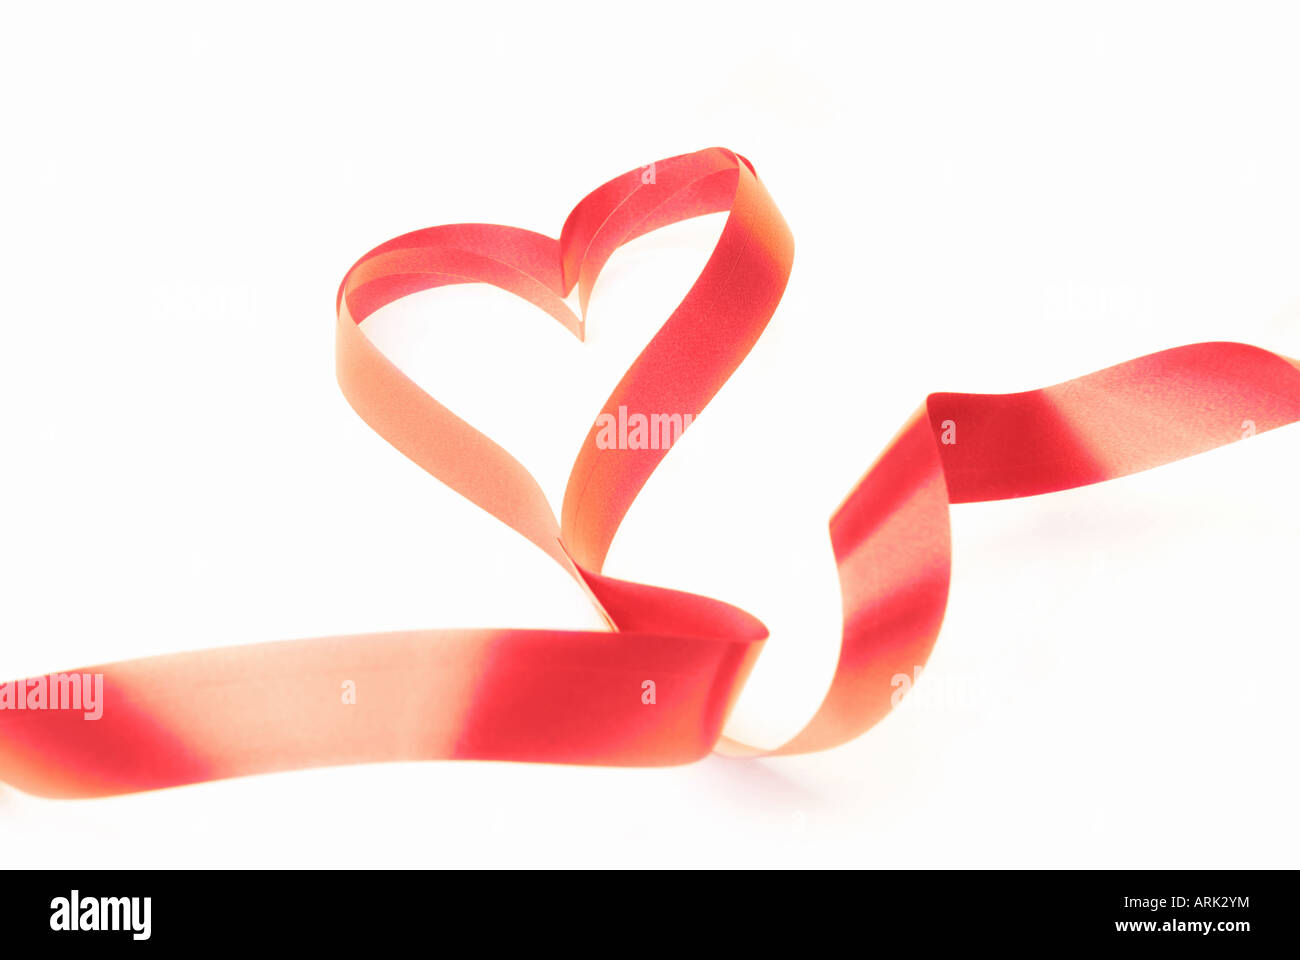 Ruban rouge en forme de coeur comme un symbole de l'amour Banque D'Images